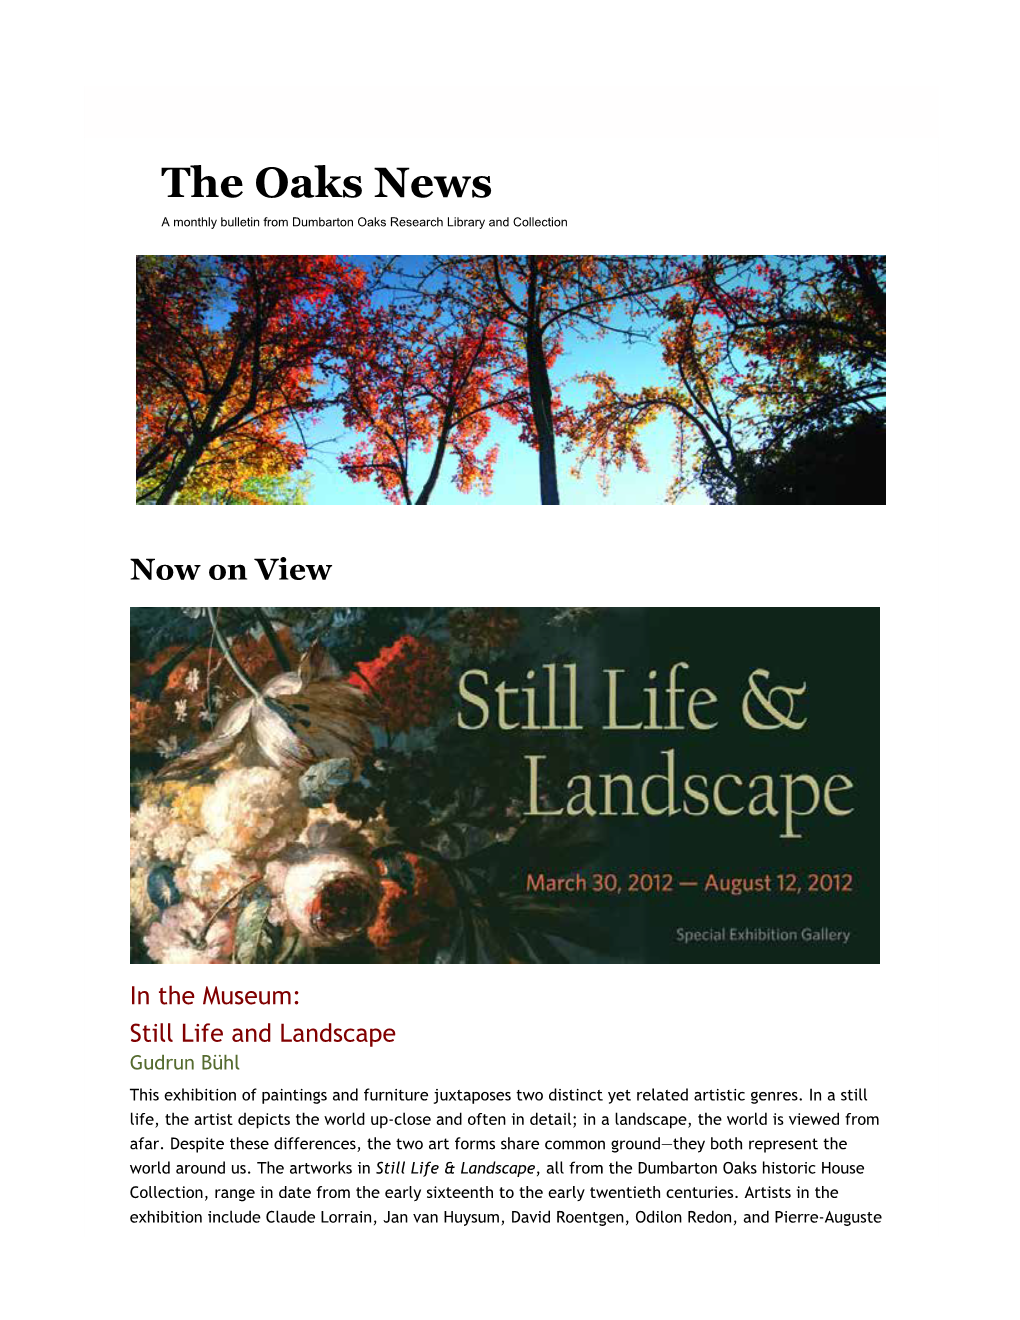 Dumbarton Oaks Newsletter, April 2012